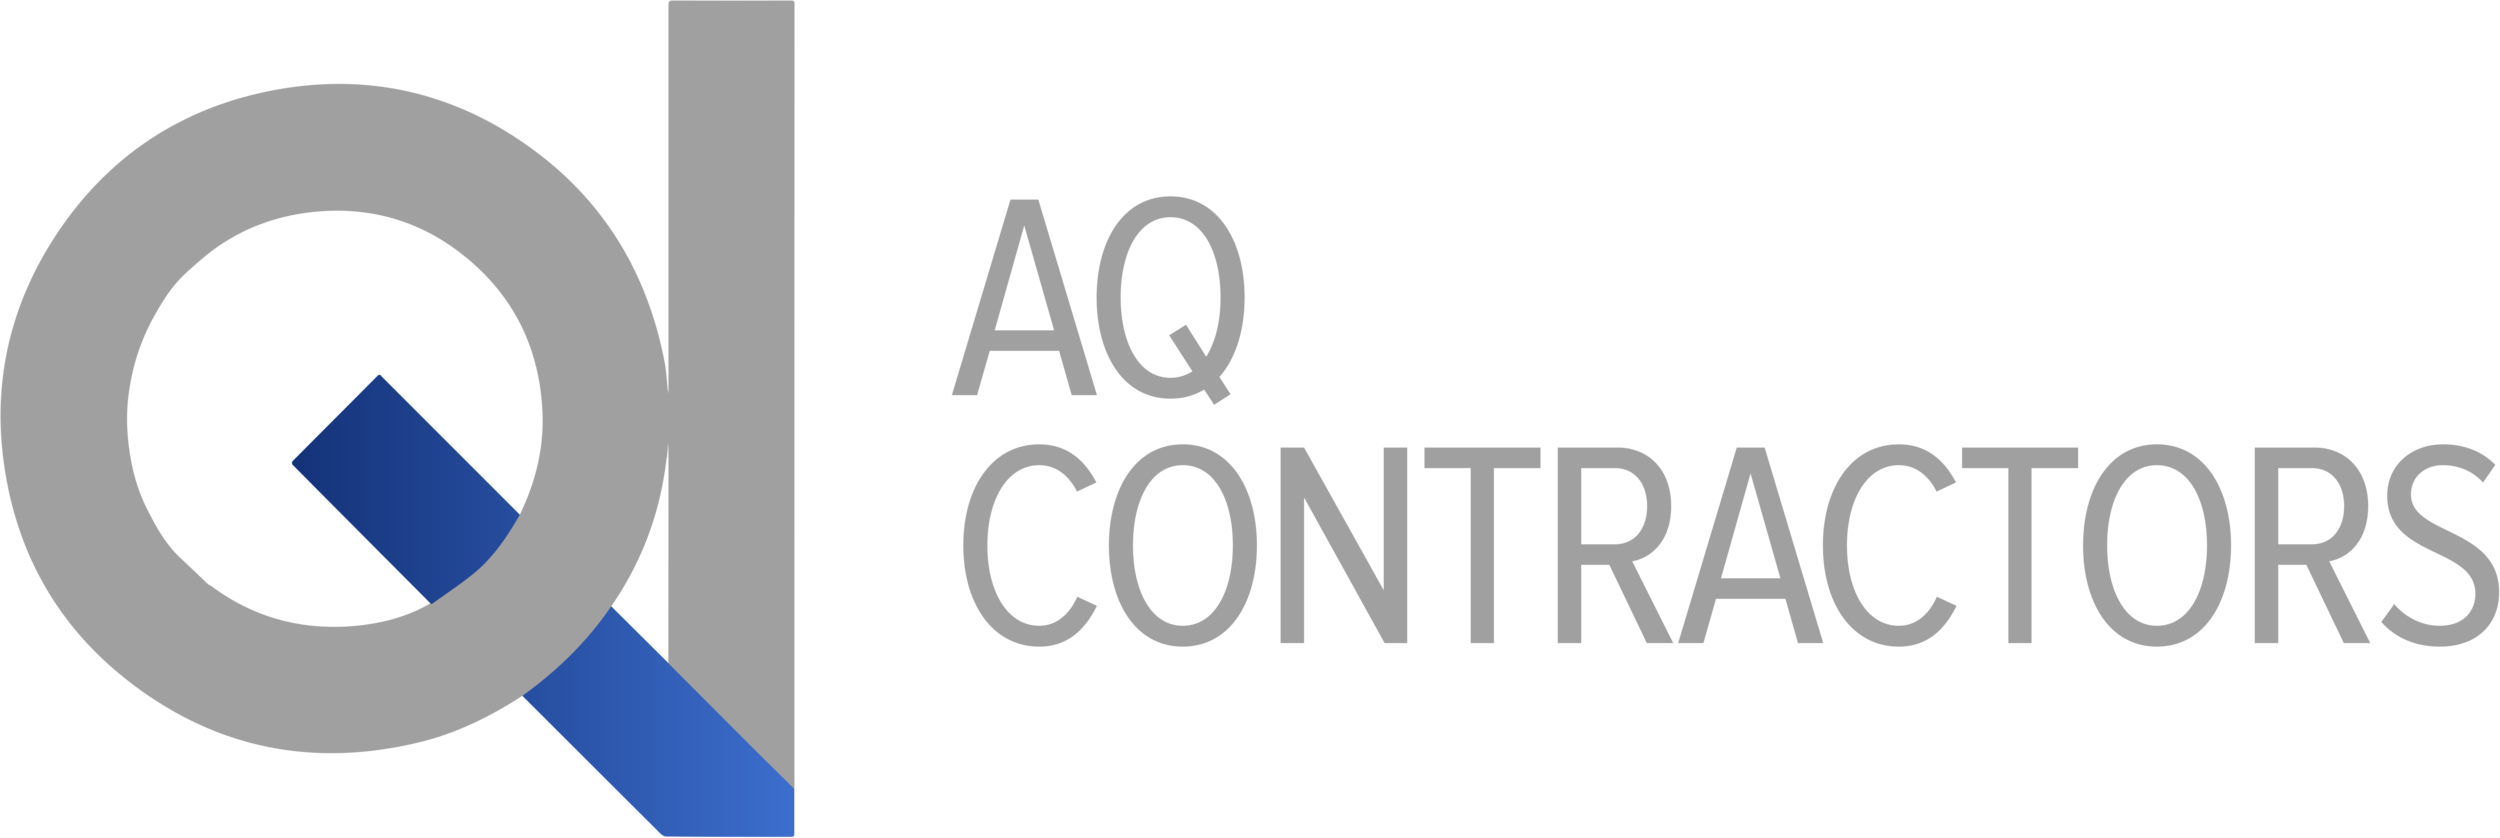 AQ Contractors